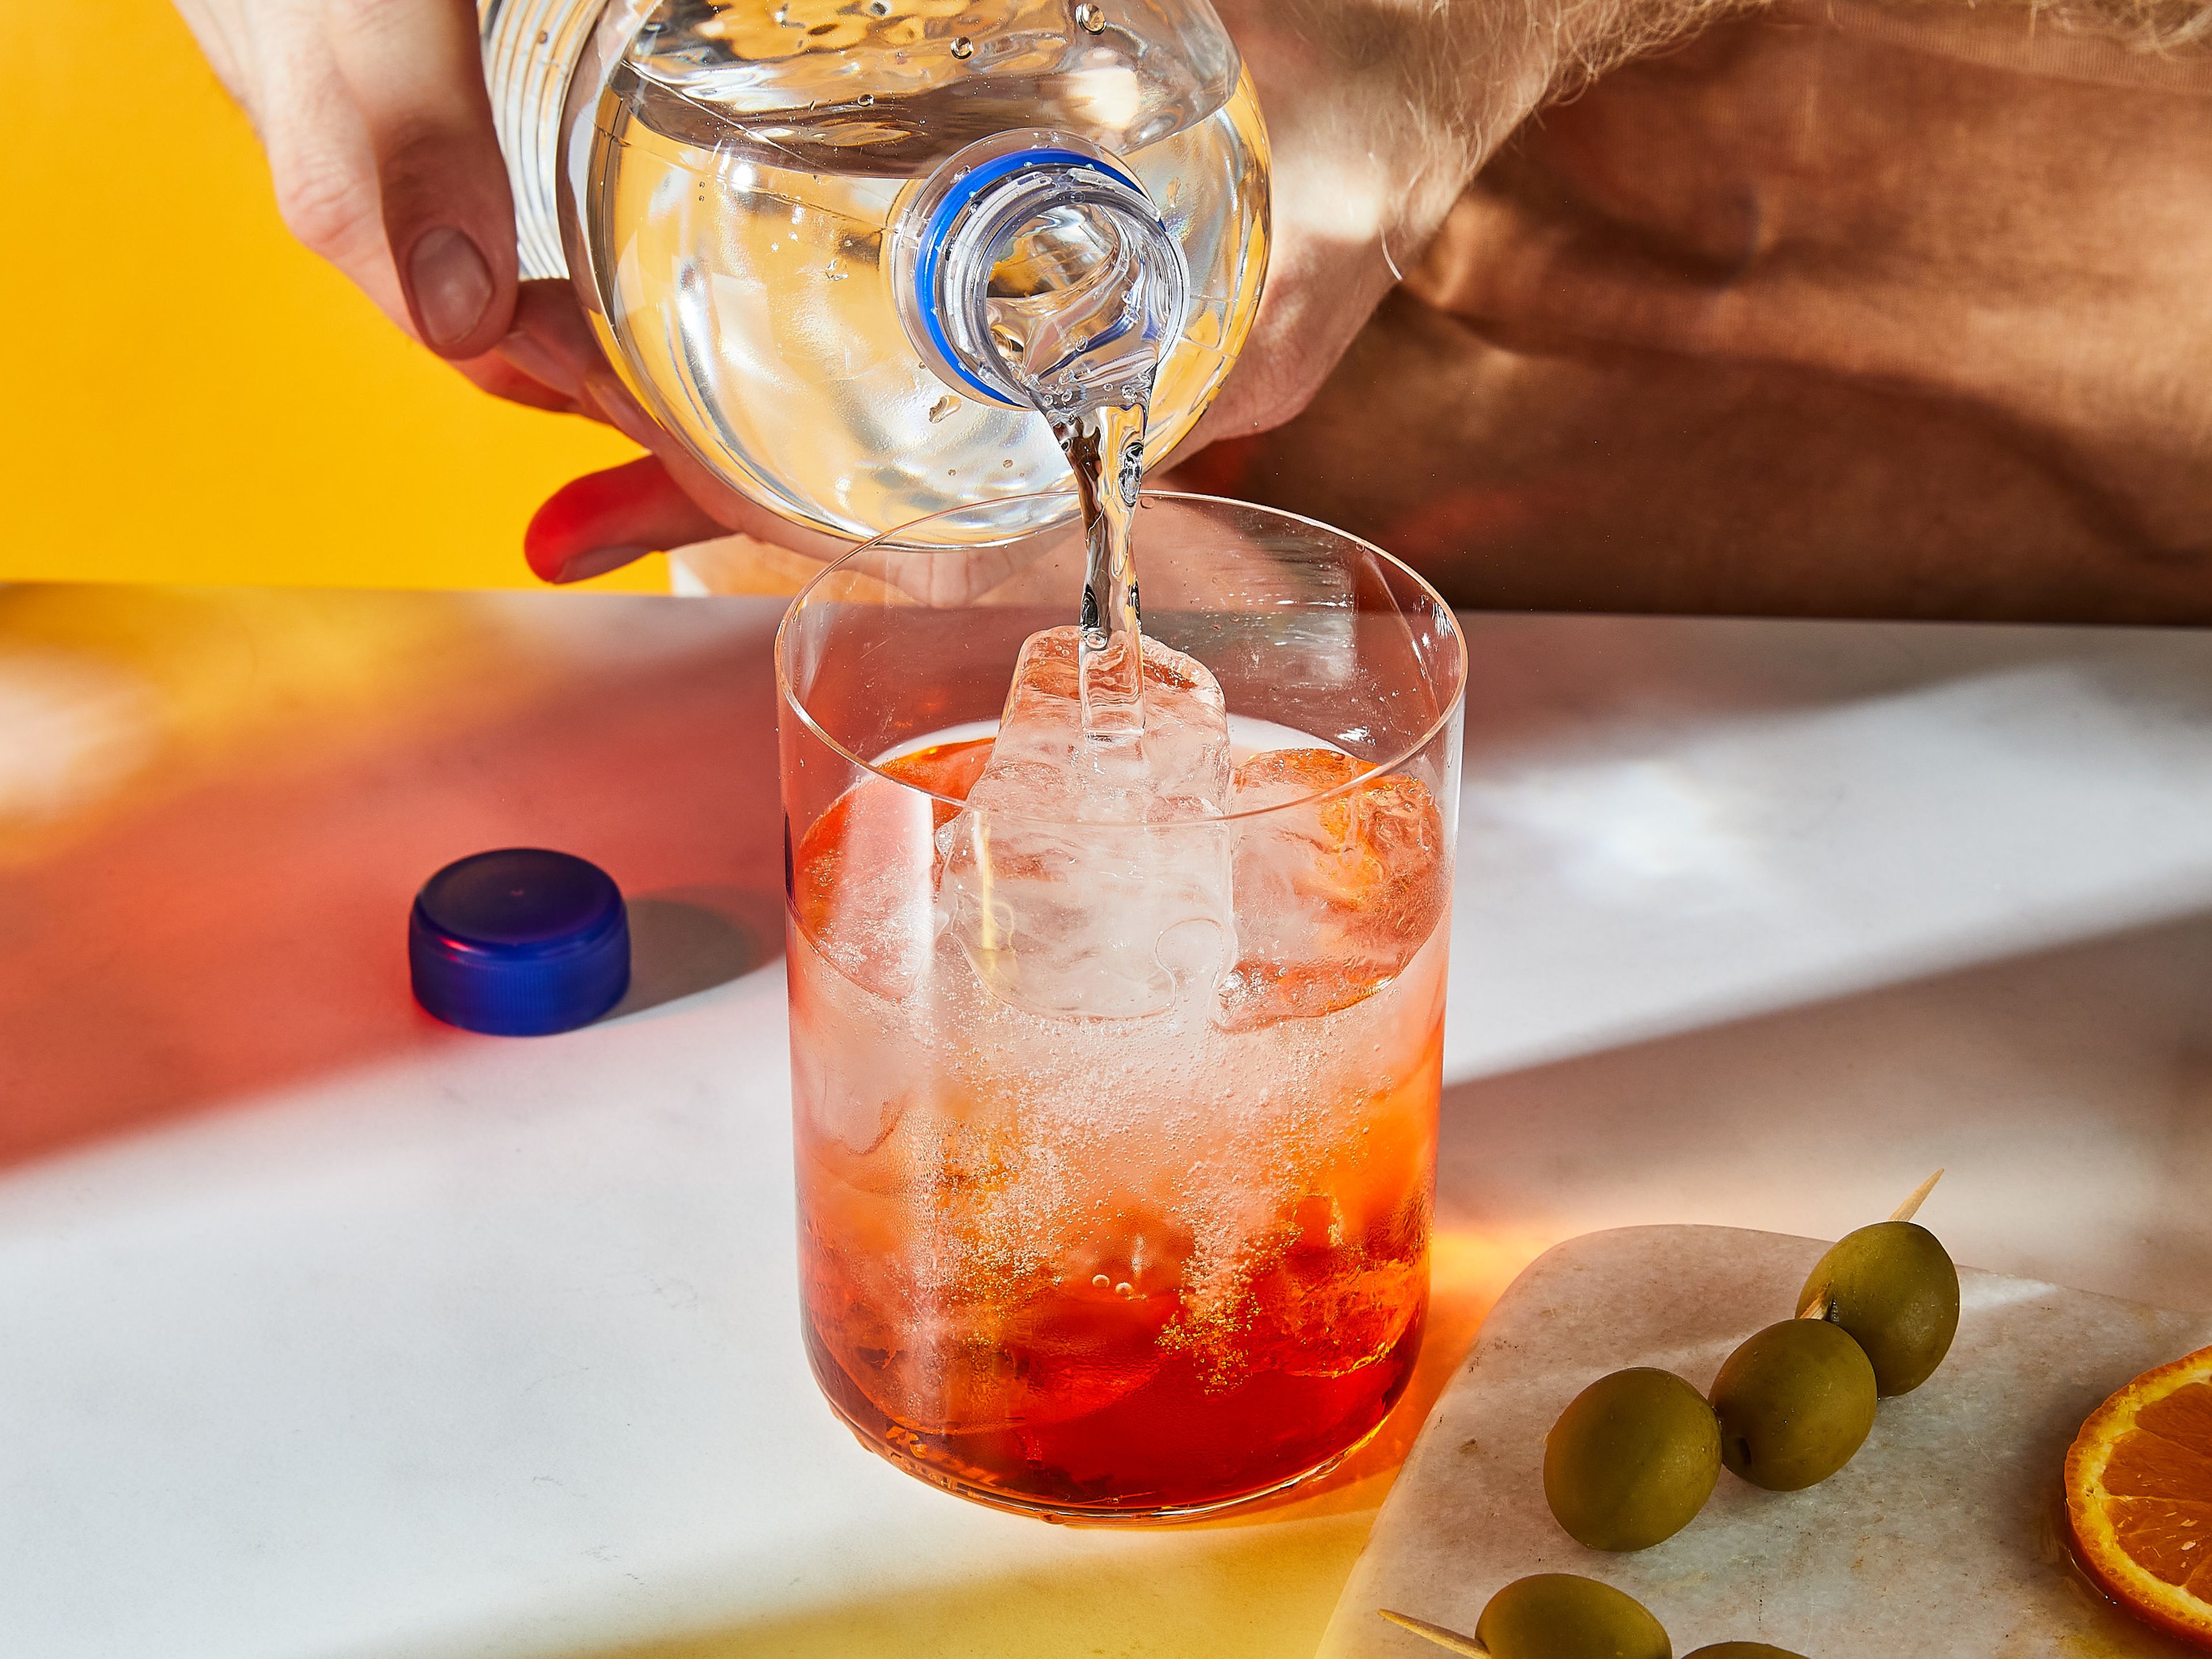 Eiswürfel in ein Weinglas geben. Aperol und Prosecco hinzugeben und mit Sodawasser auffüllen. Mit Orangenscheiben und Olivenspießchen garnieren.